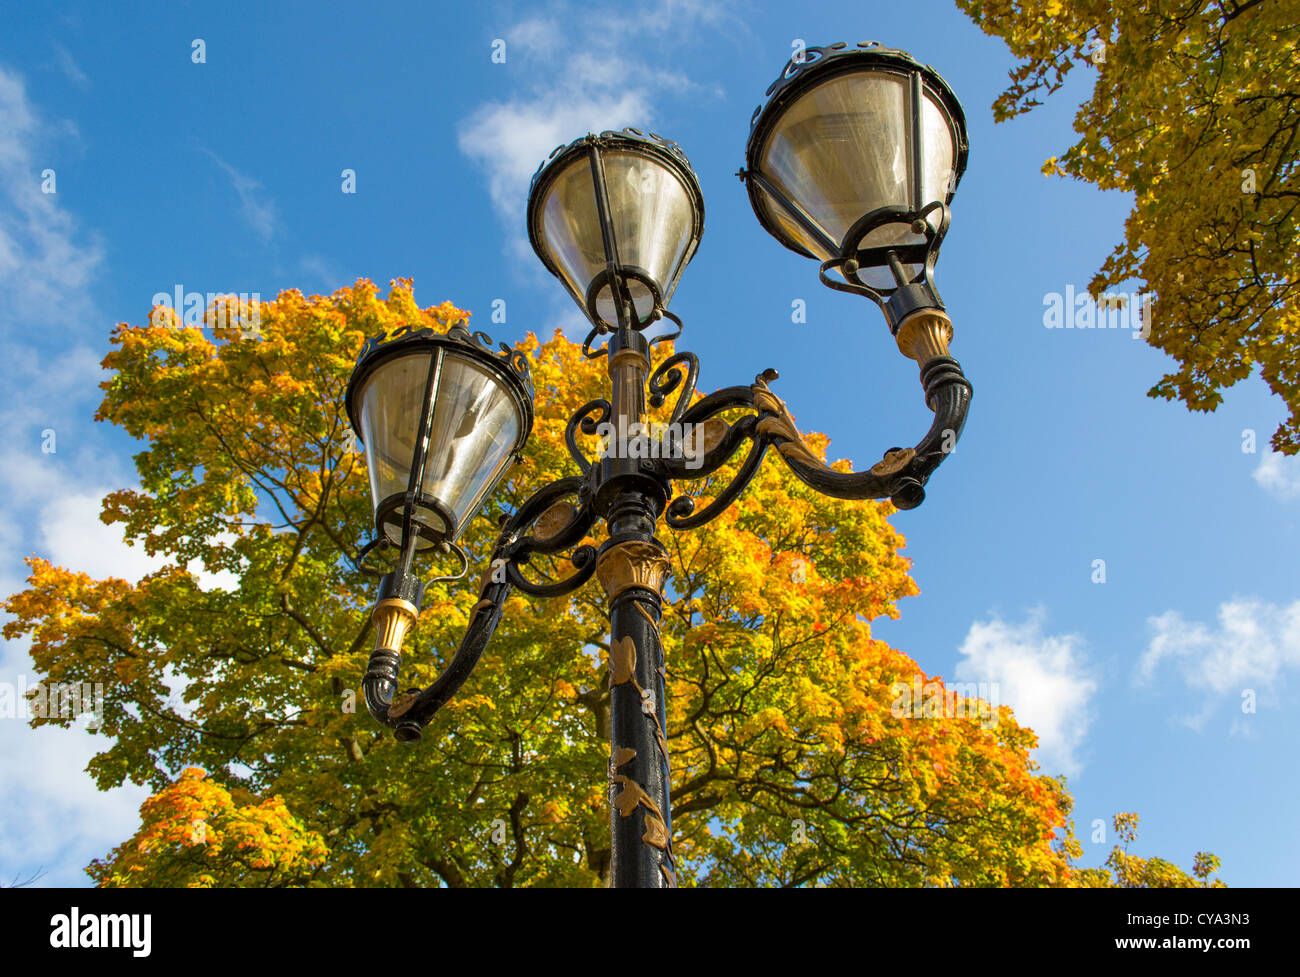 Victorian style street lamp Stock Photo